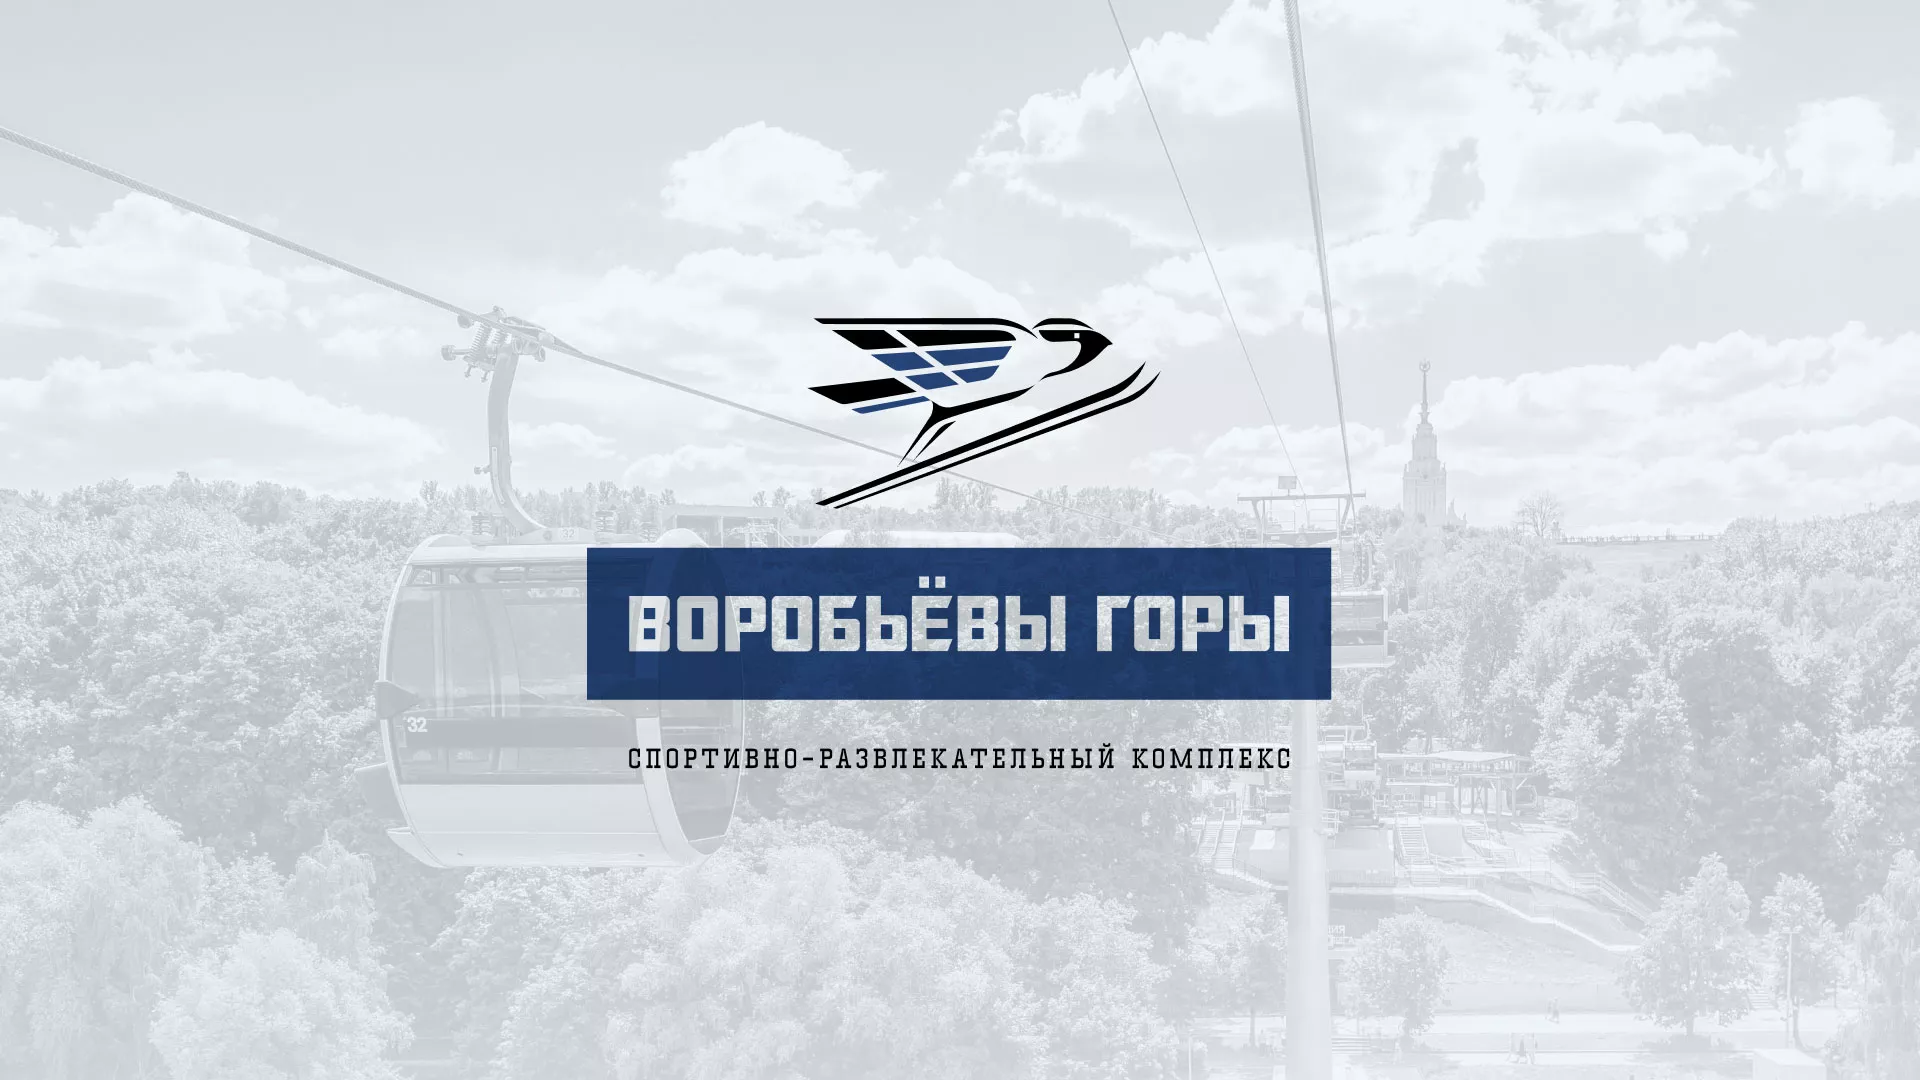 Разработка сайта в Азове для спортивно-развлекательного комплекса «Воробьёвы горы»